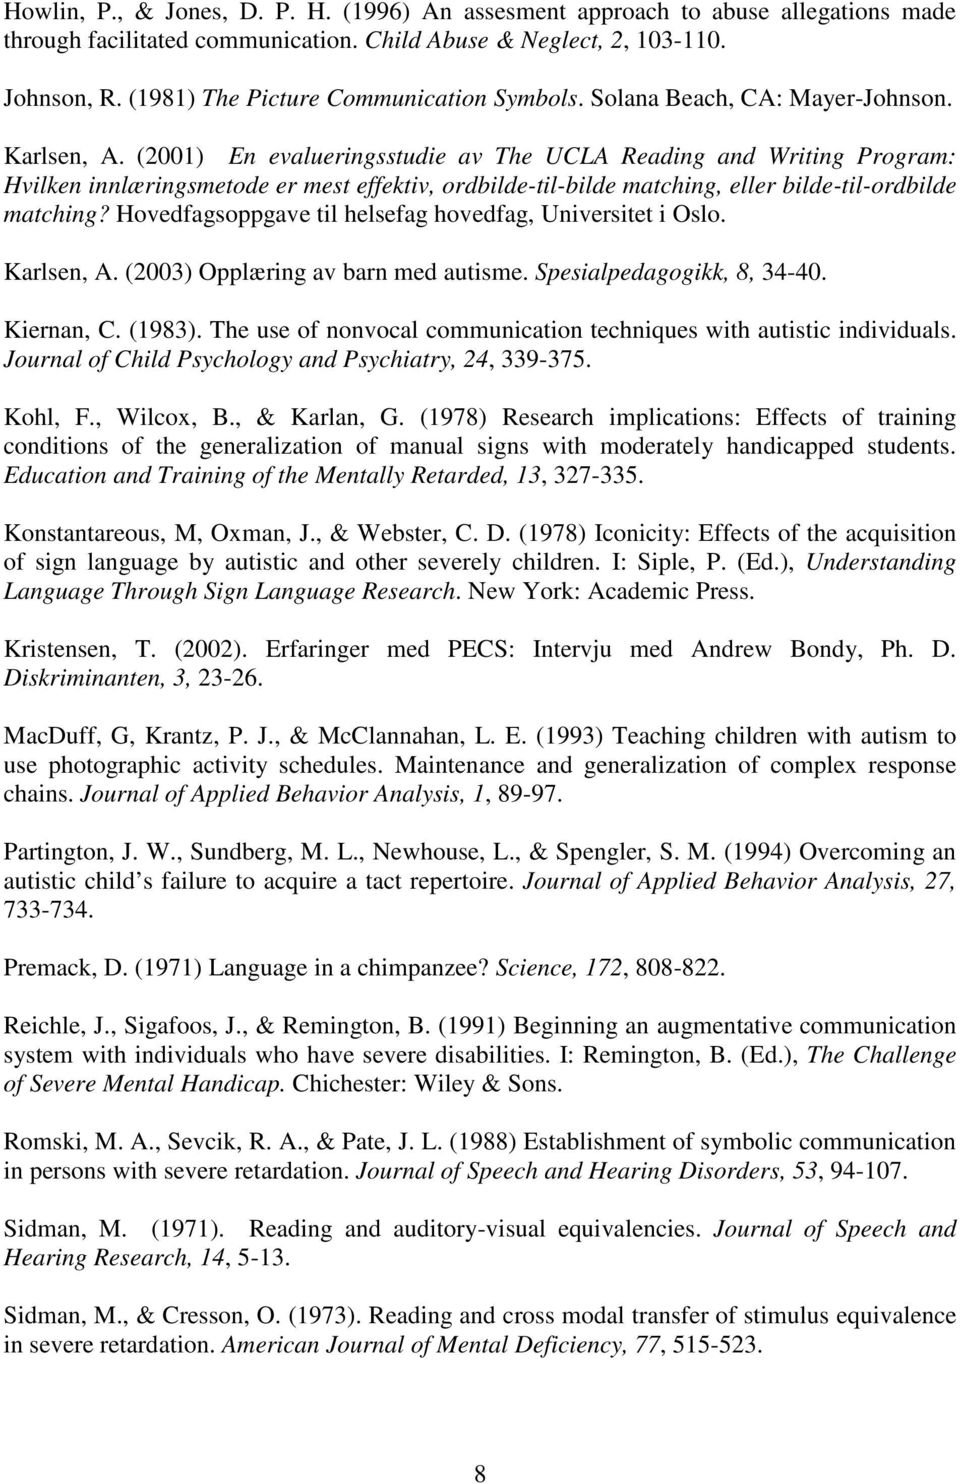 (2001) En evalueringsstudie av The UCLA Reading and Writing Program: Hvilken innlæringsmetode er mest effektiv, ordbilde-til-bilde matching, eller bilde-til-ordbilde matching?